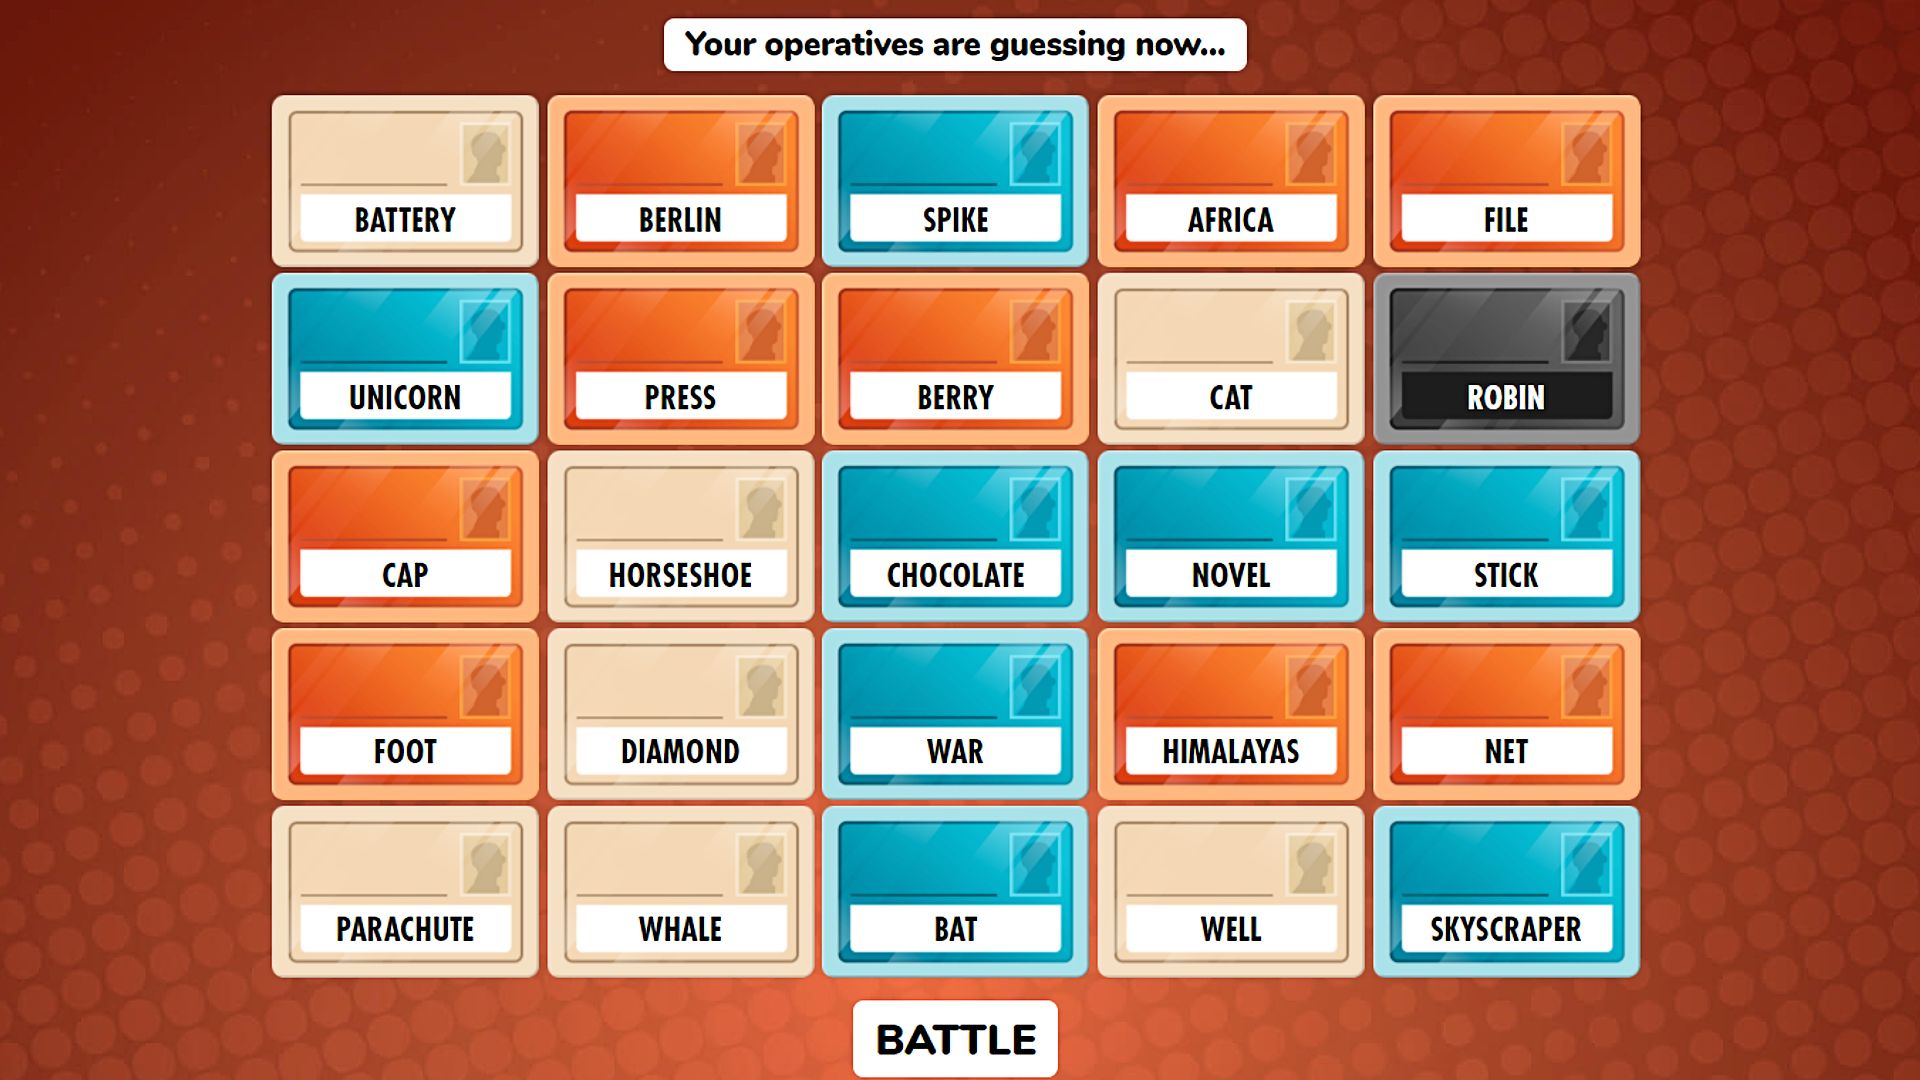 Giochi online: nome in codice. L'immagine mostra una selezione di carte con parole diverse su di esse